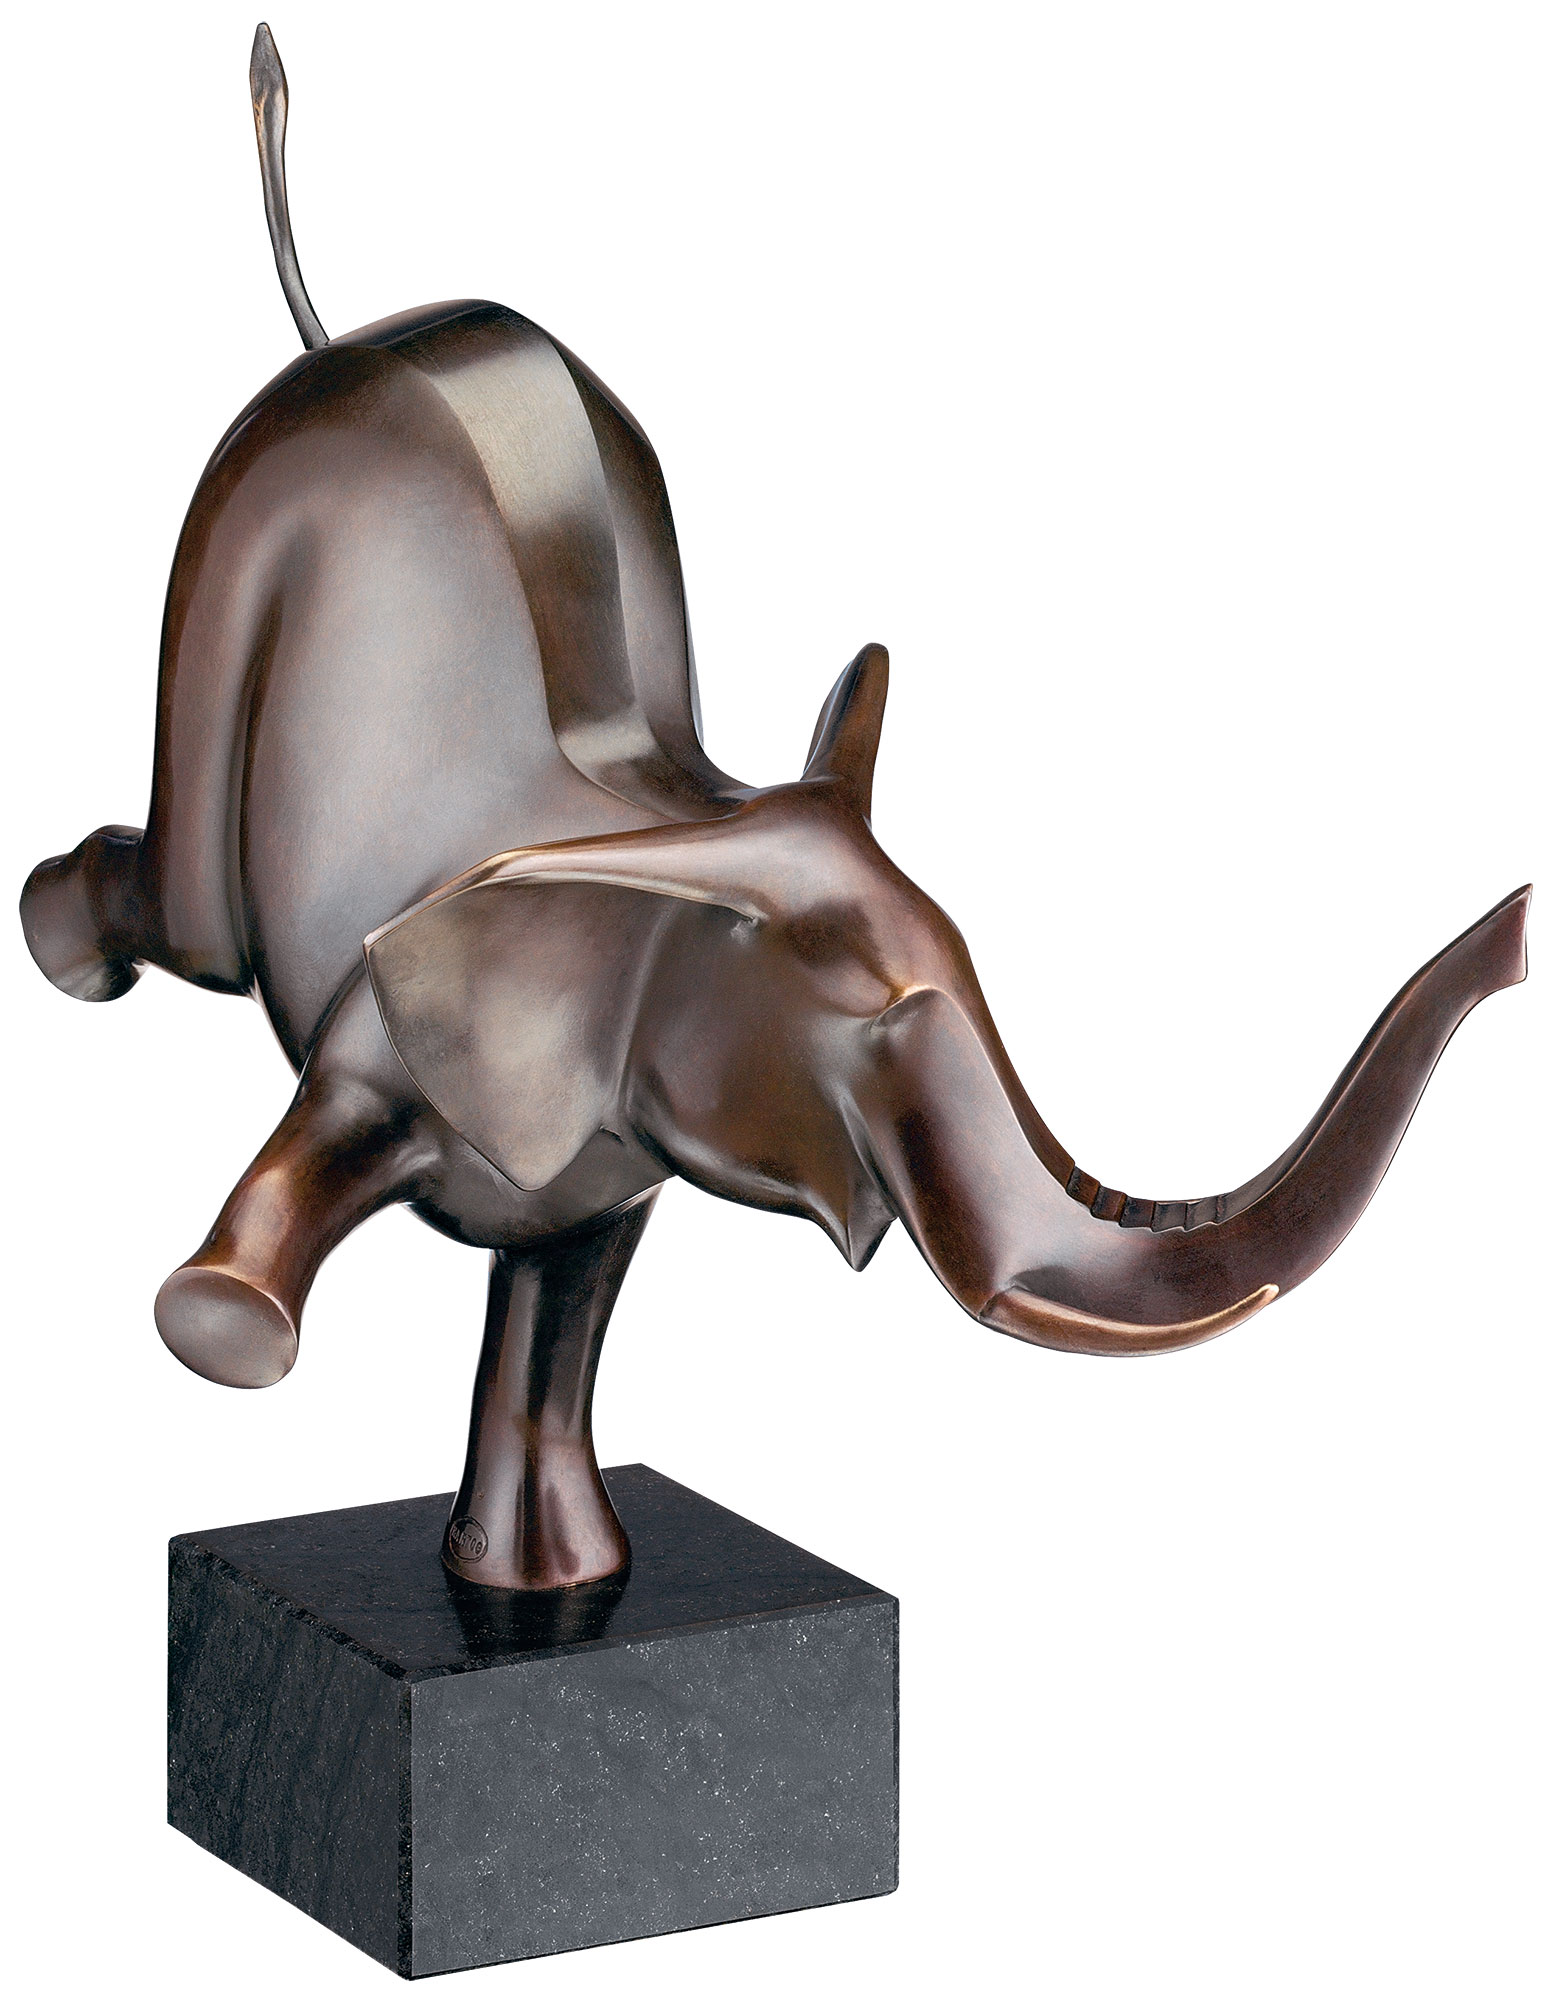 Evert den Hartog: Skulptur 'Happy Elefant' (2004), Bronze